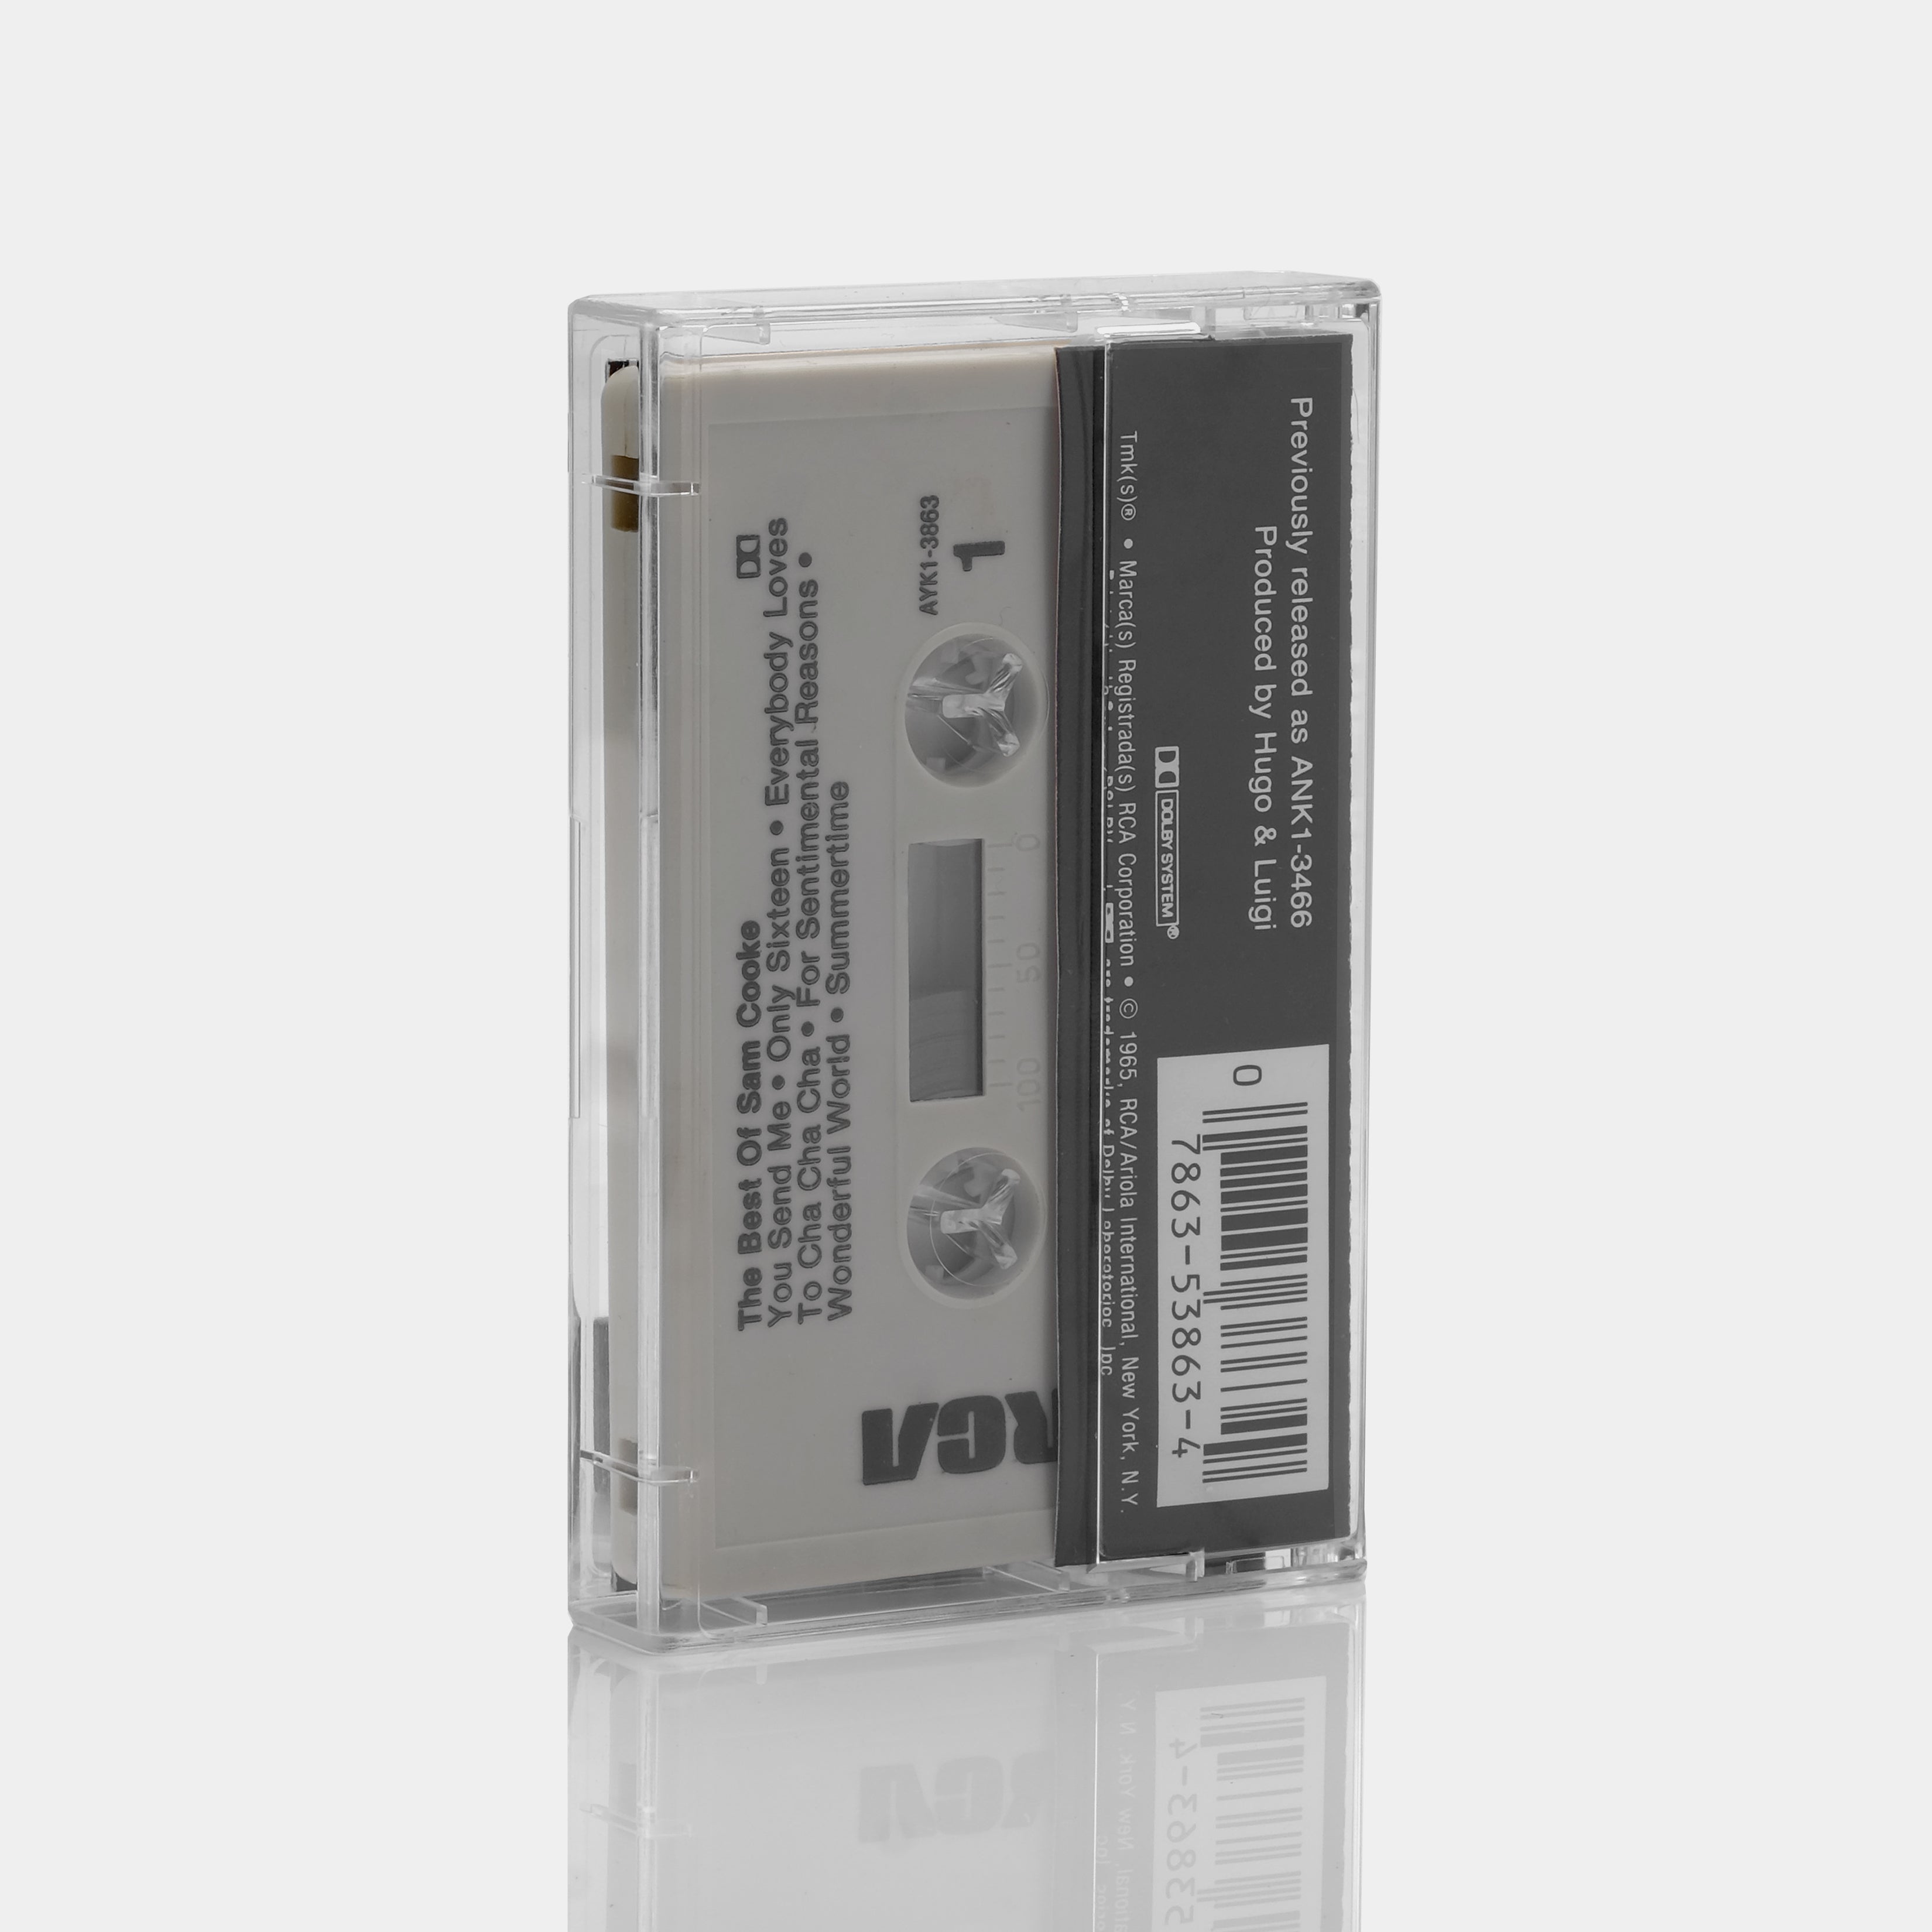 Sam Cooke - The Best Of Sam Cooke Cassette Tape